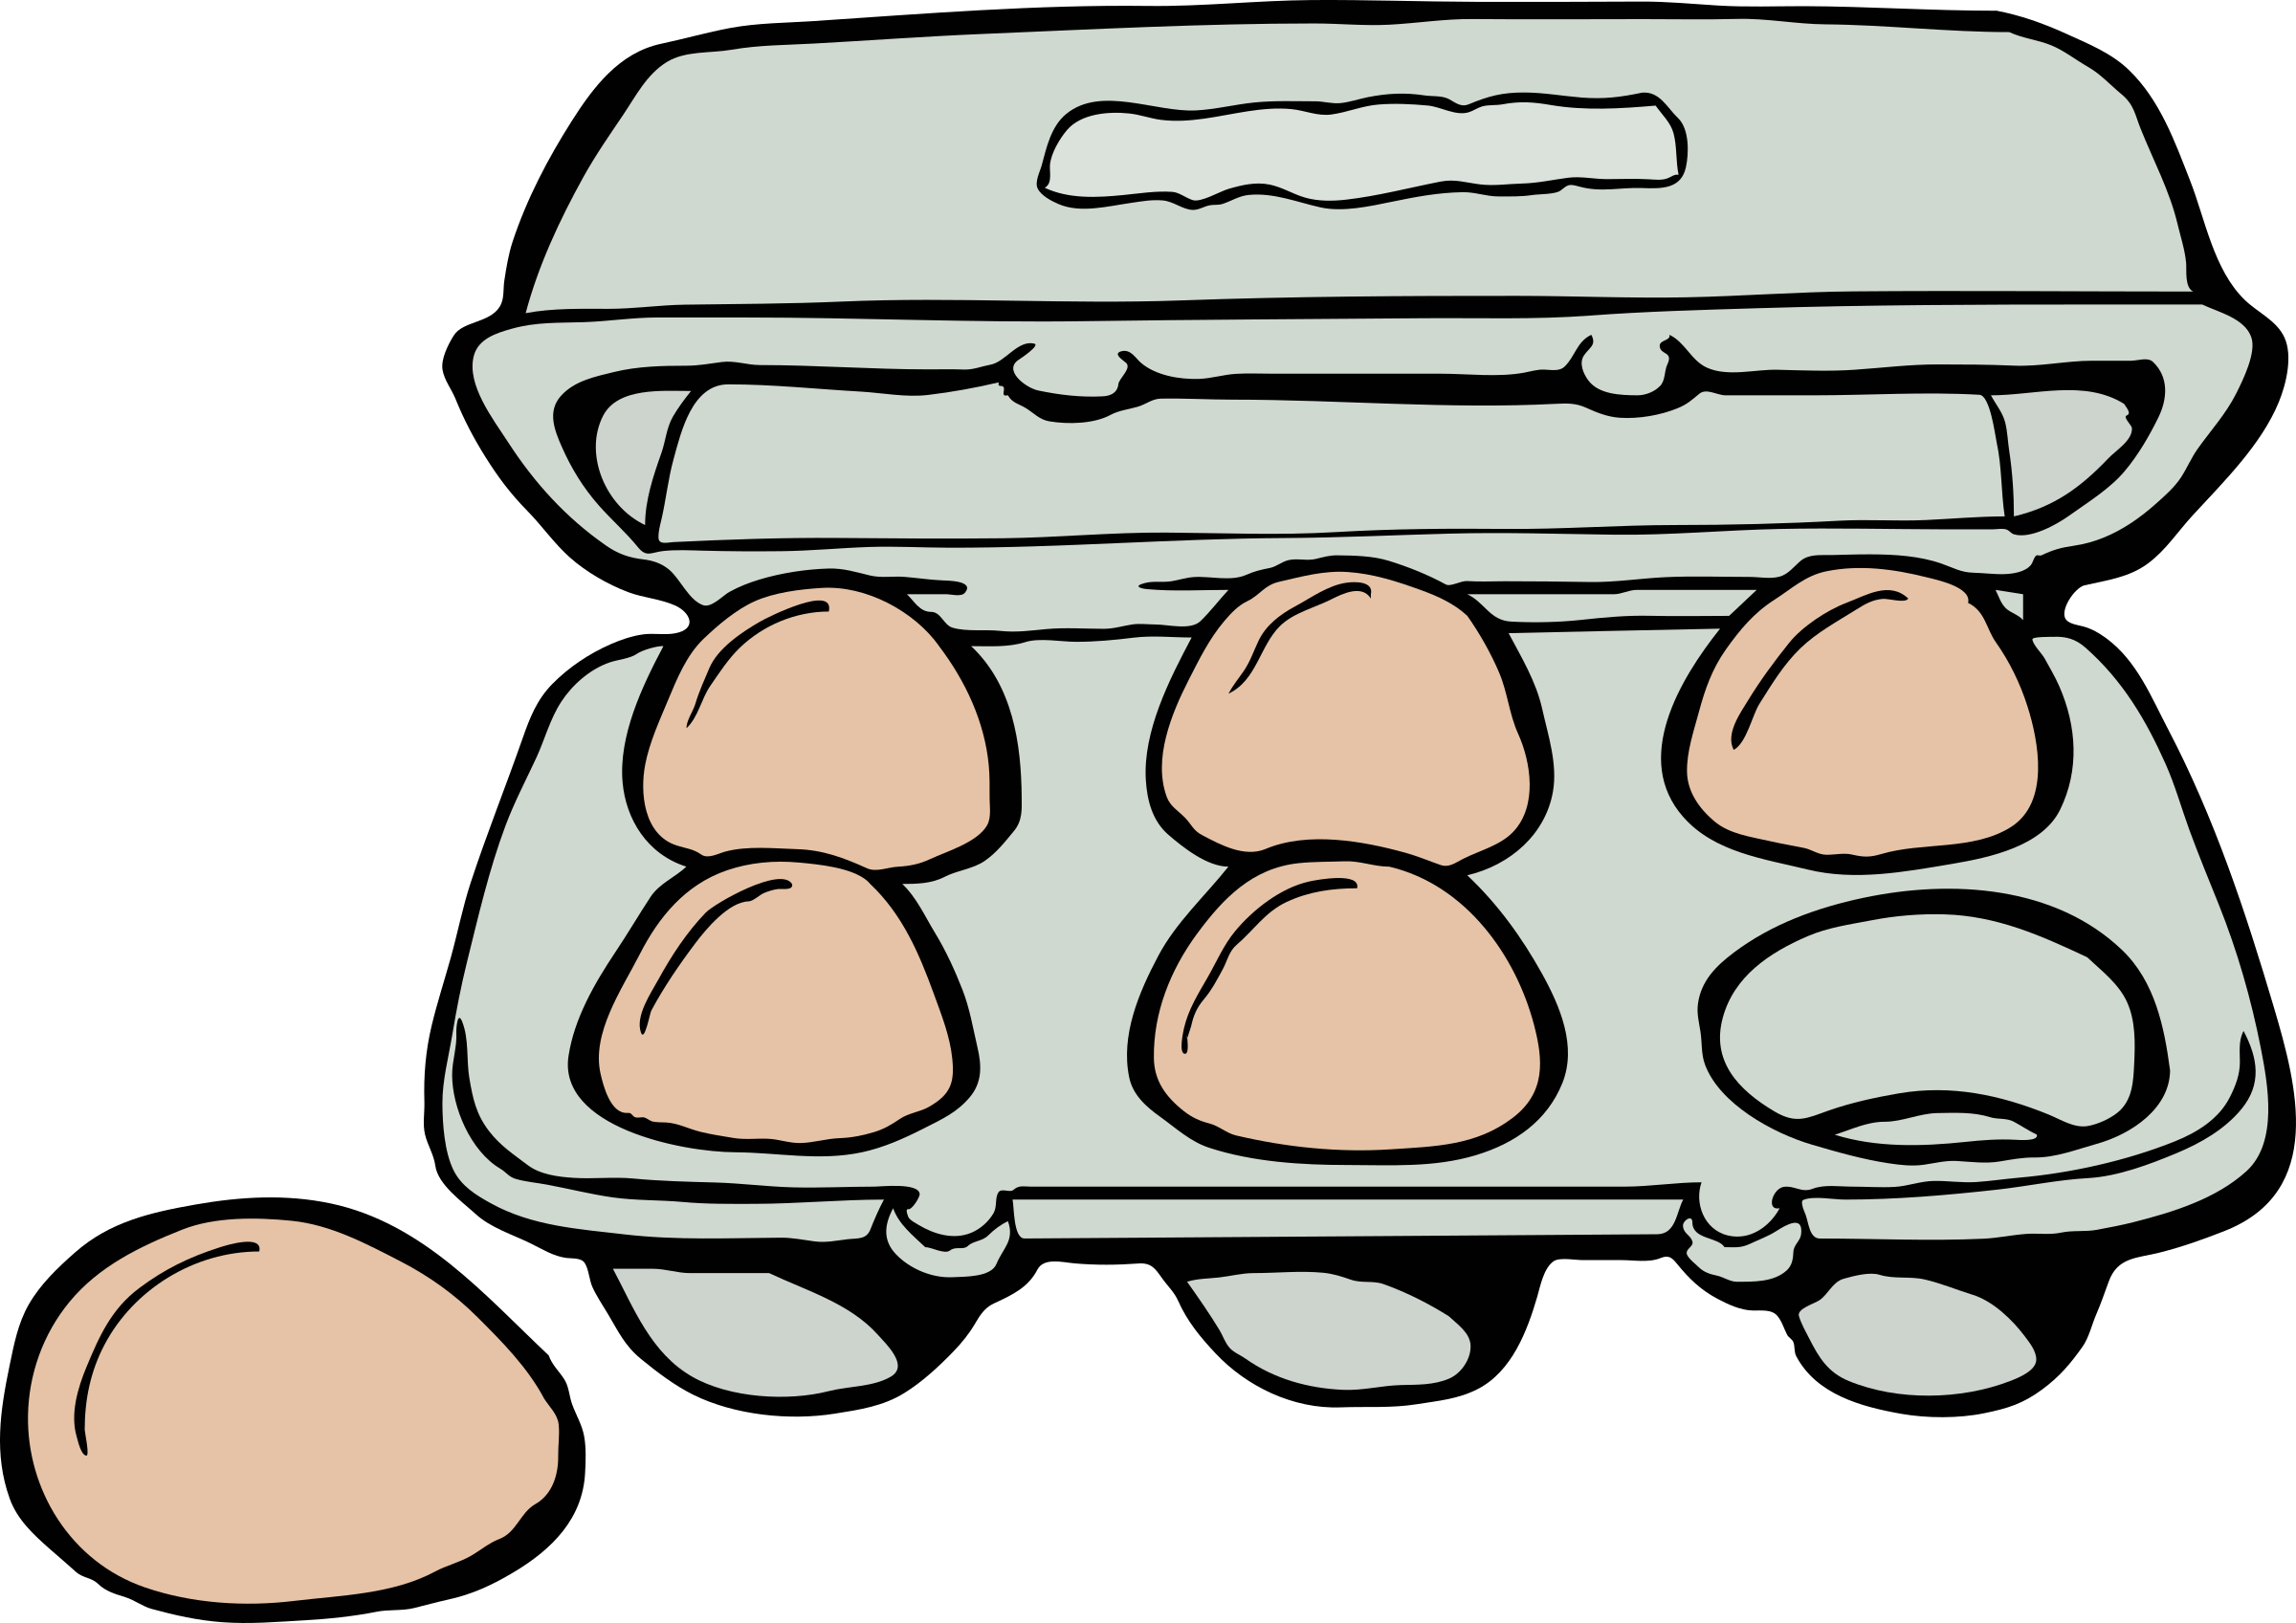 A Carton Of Eggs